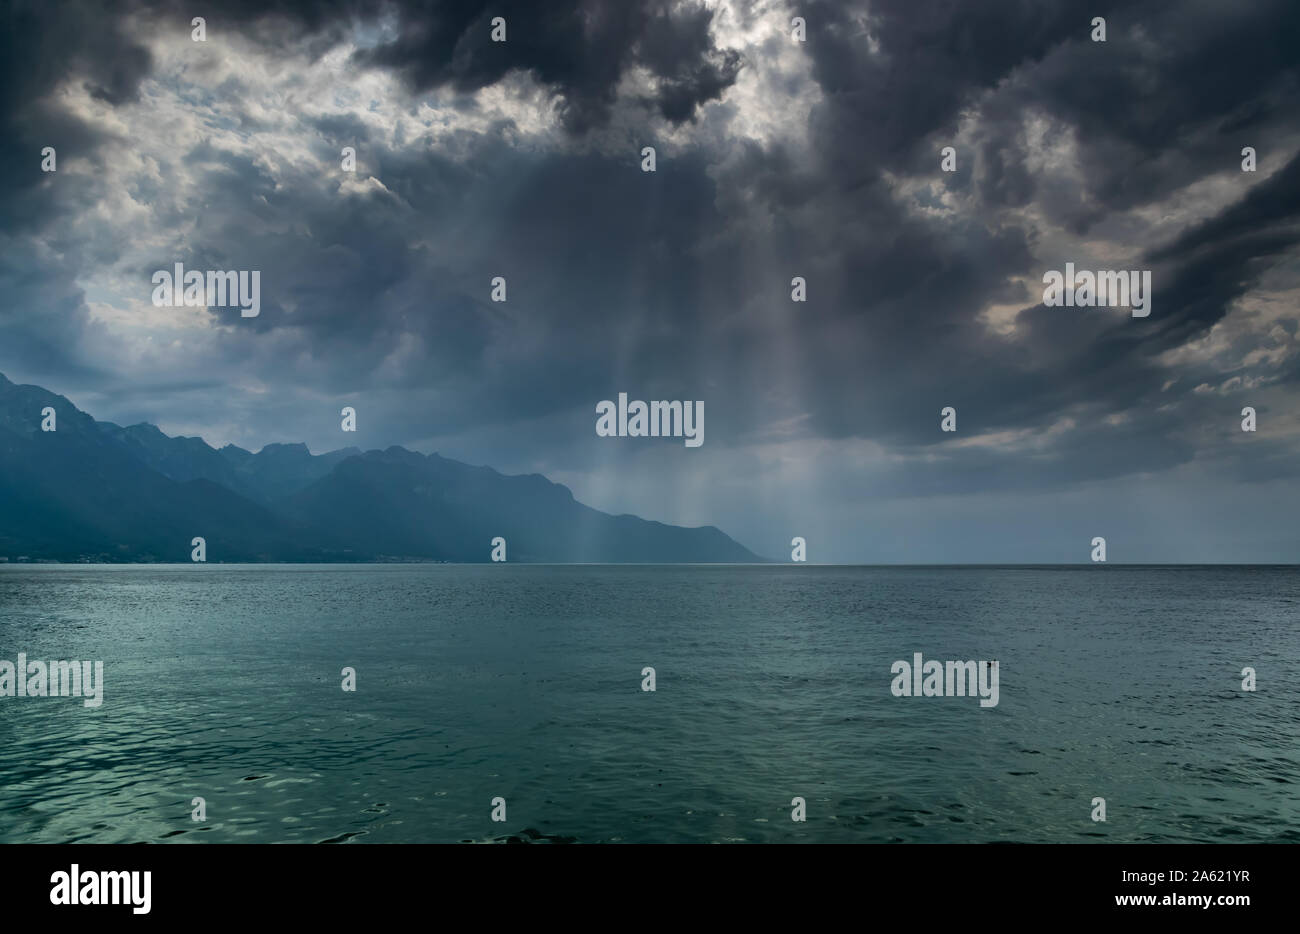 Paysage de montagnes des Alpes, le lac Léman,nuages sombres avec les rayons du soleil avant la pluie.cliché pris à partir de la rive du lac à Montreux, Suisse. Banque D'Images